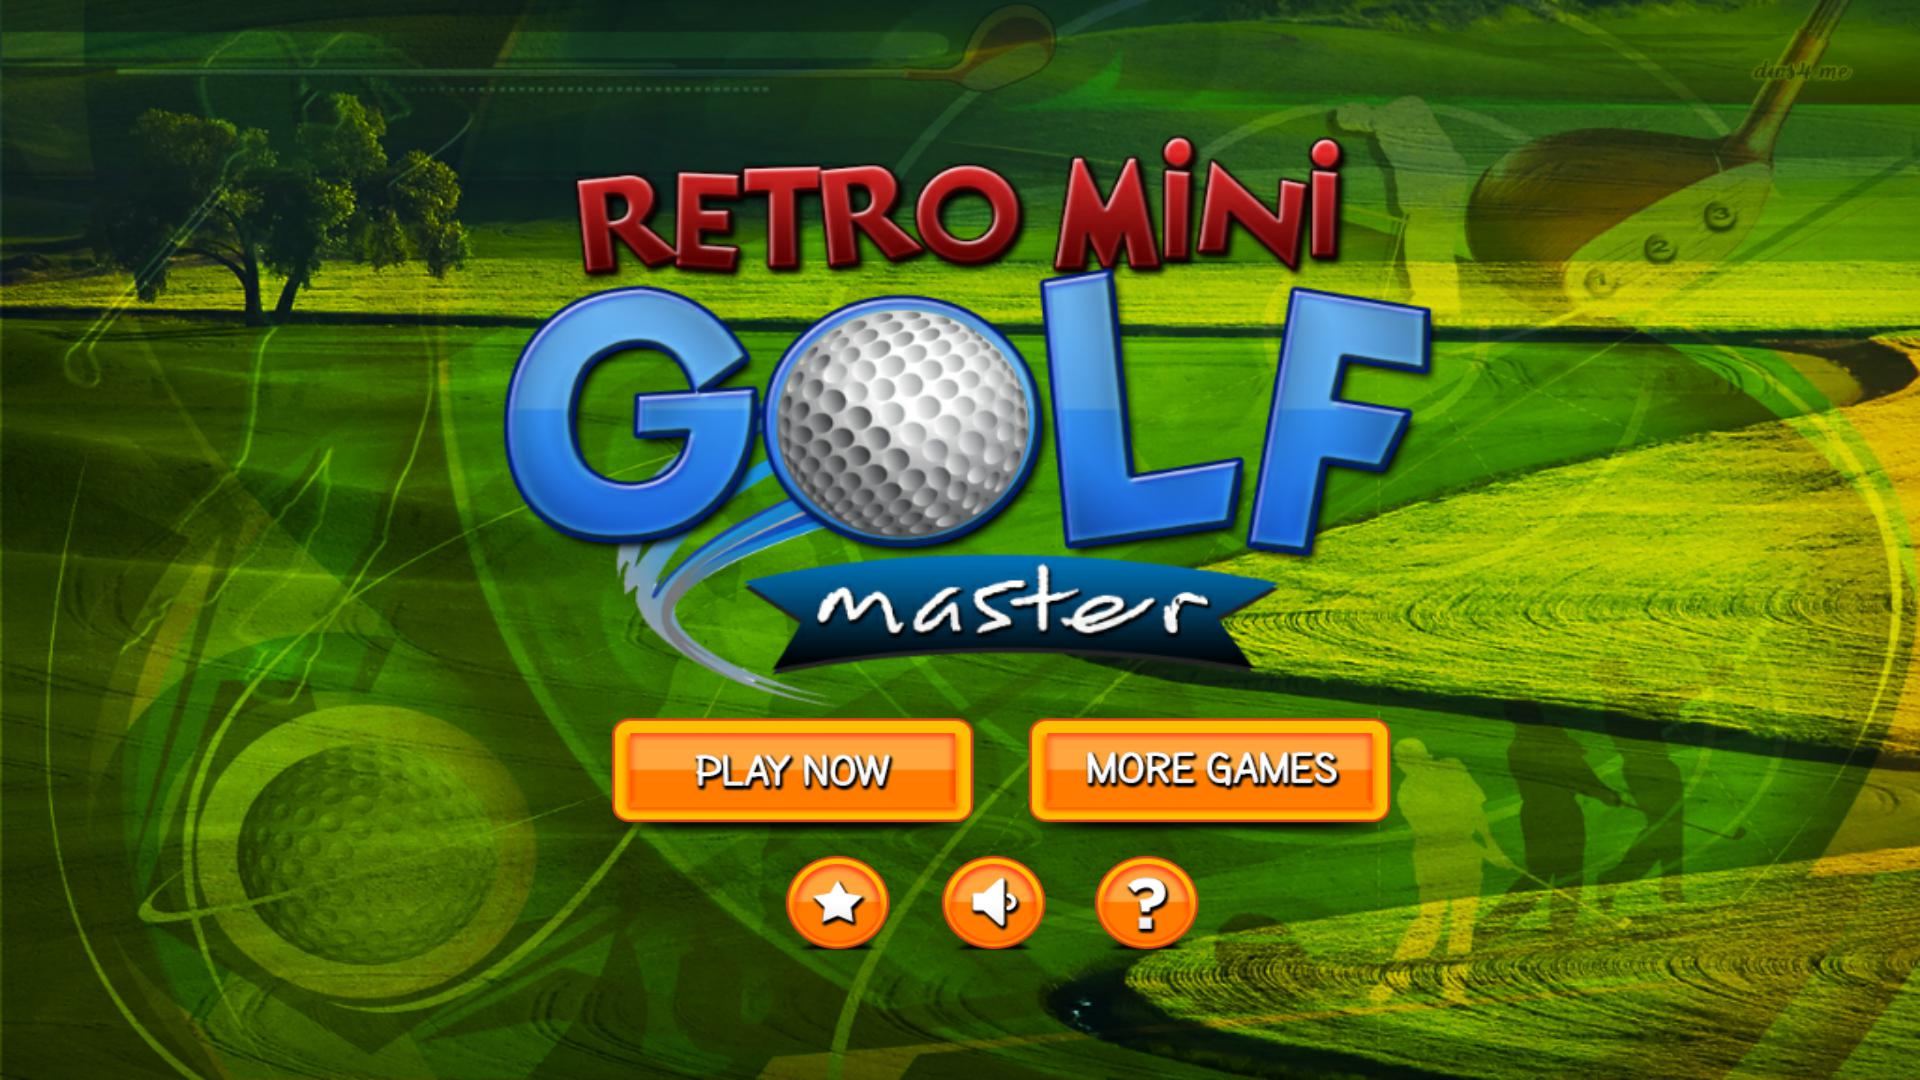 Retro Mini Golf Master Pro